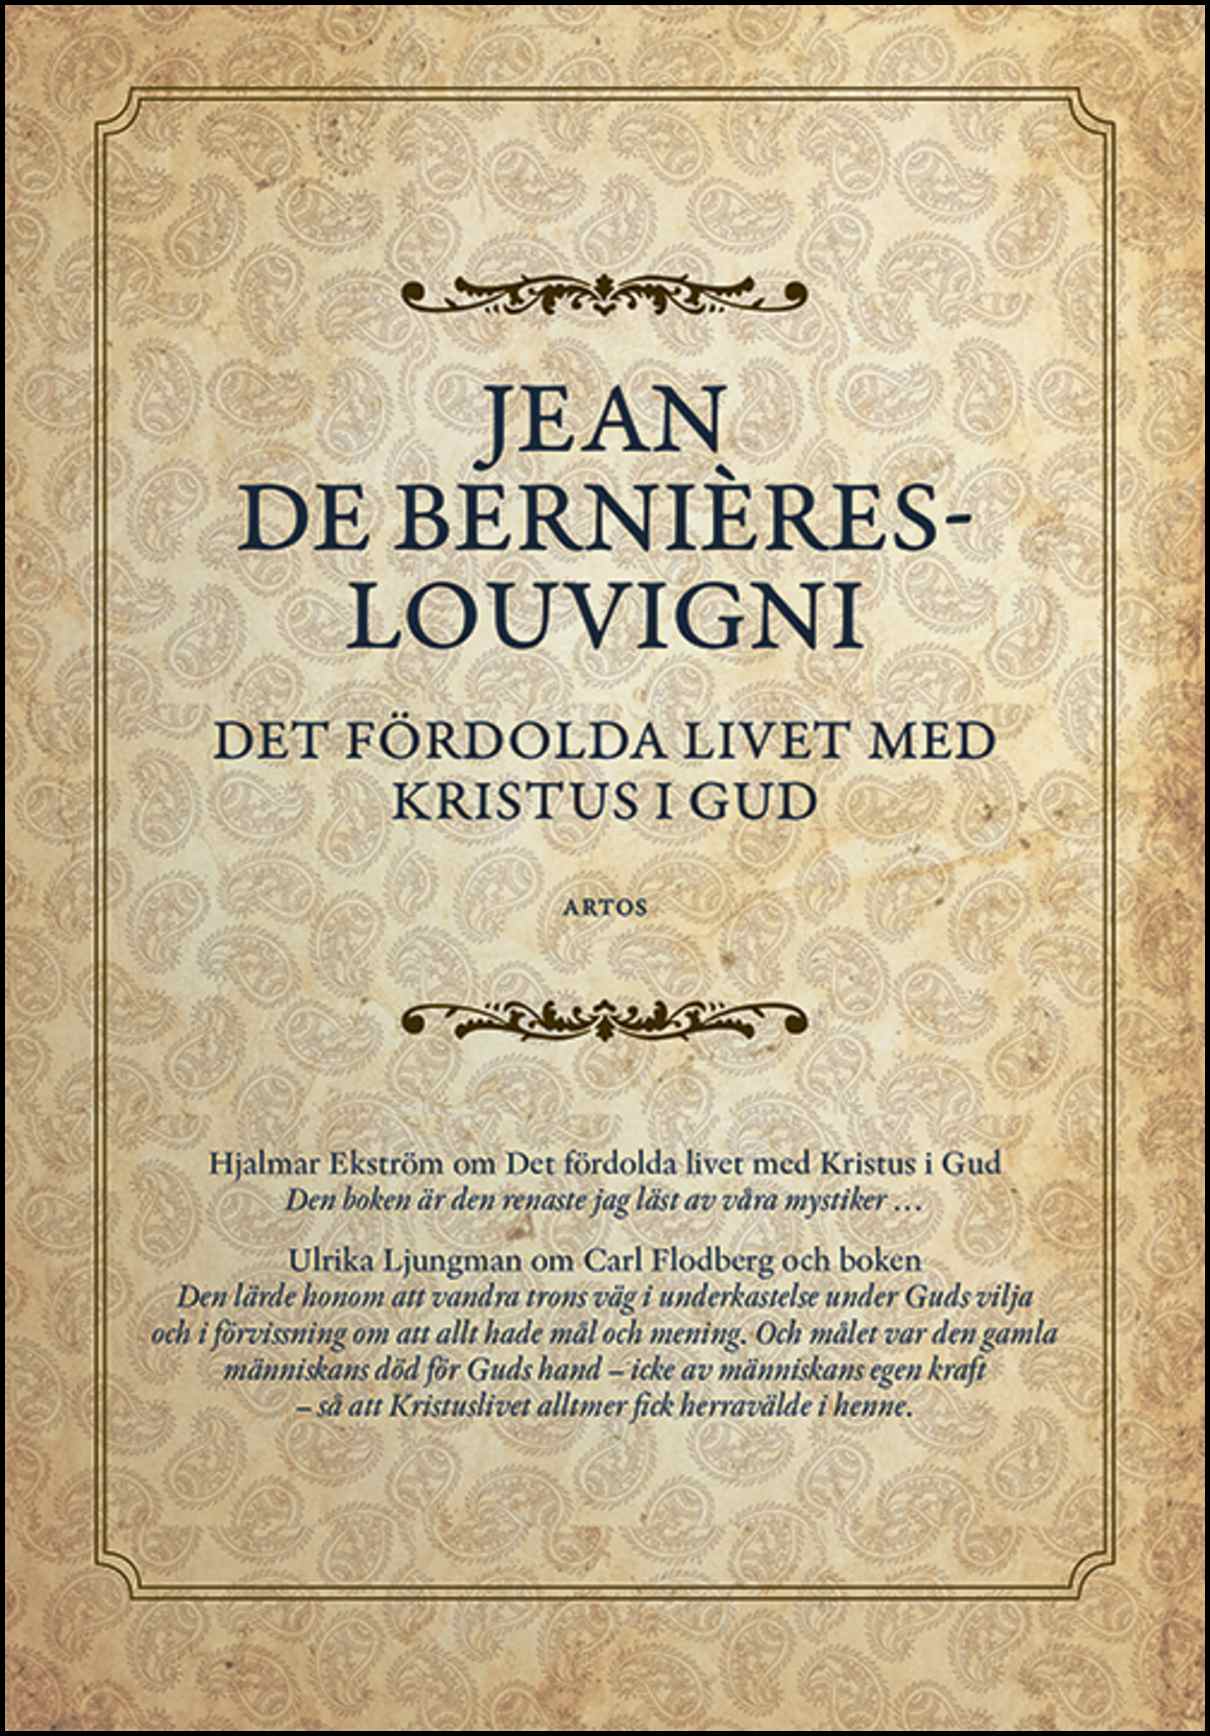 Bernières-Louvigni, Jean de | Det fördolda livet med Kristus i Gud : I urval av en karmelitnunna samt språkligt revidera...